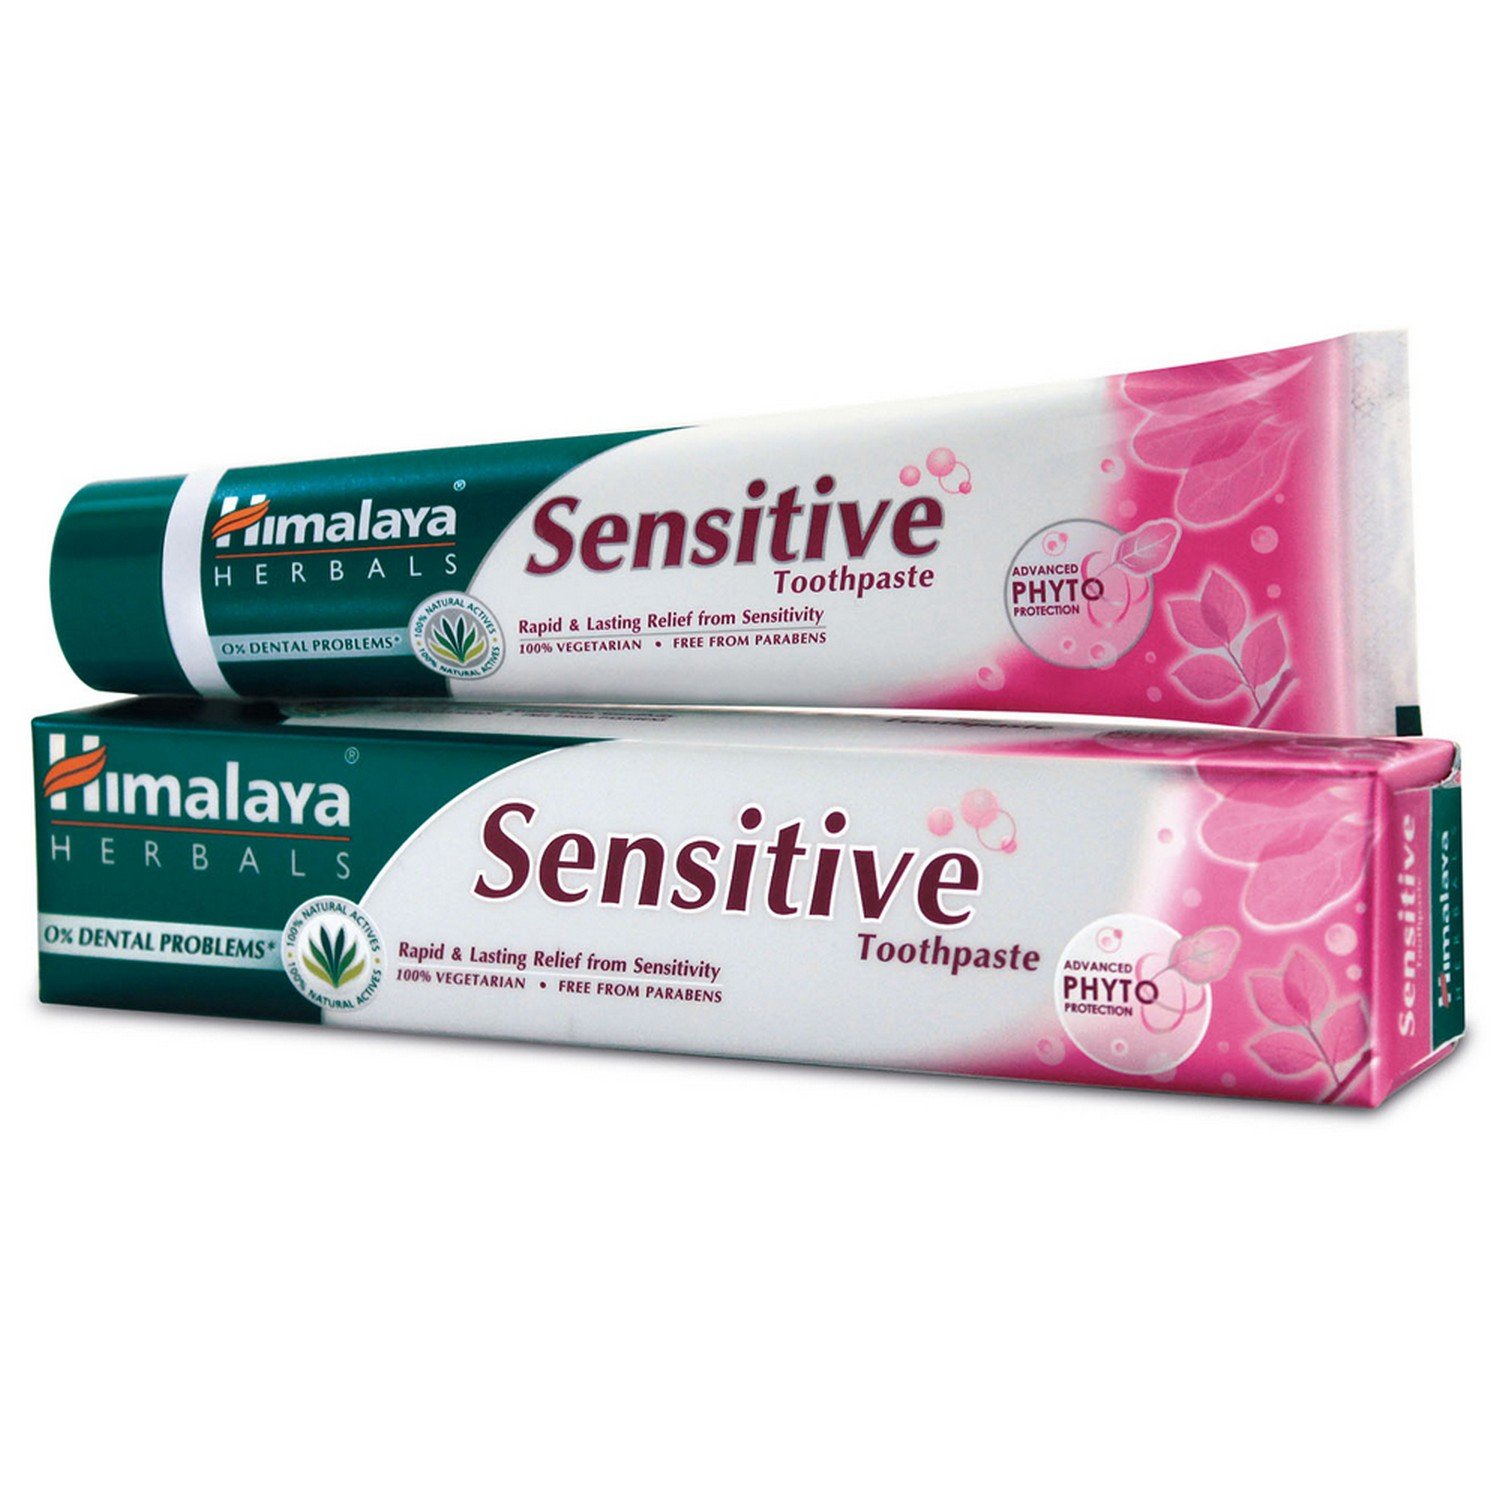 Зубная паста для чувствительных зубов Сенситив, 80 г, производитель Хималая; Sensitive Toothpaste, 80 g, Himalaya